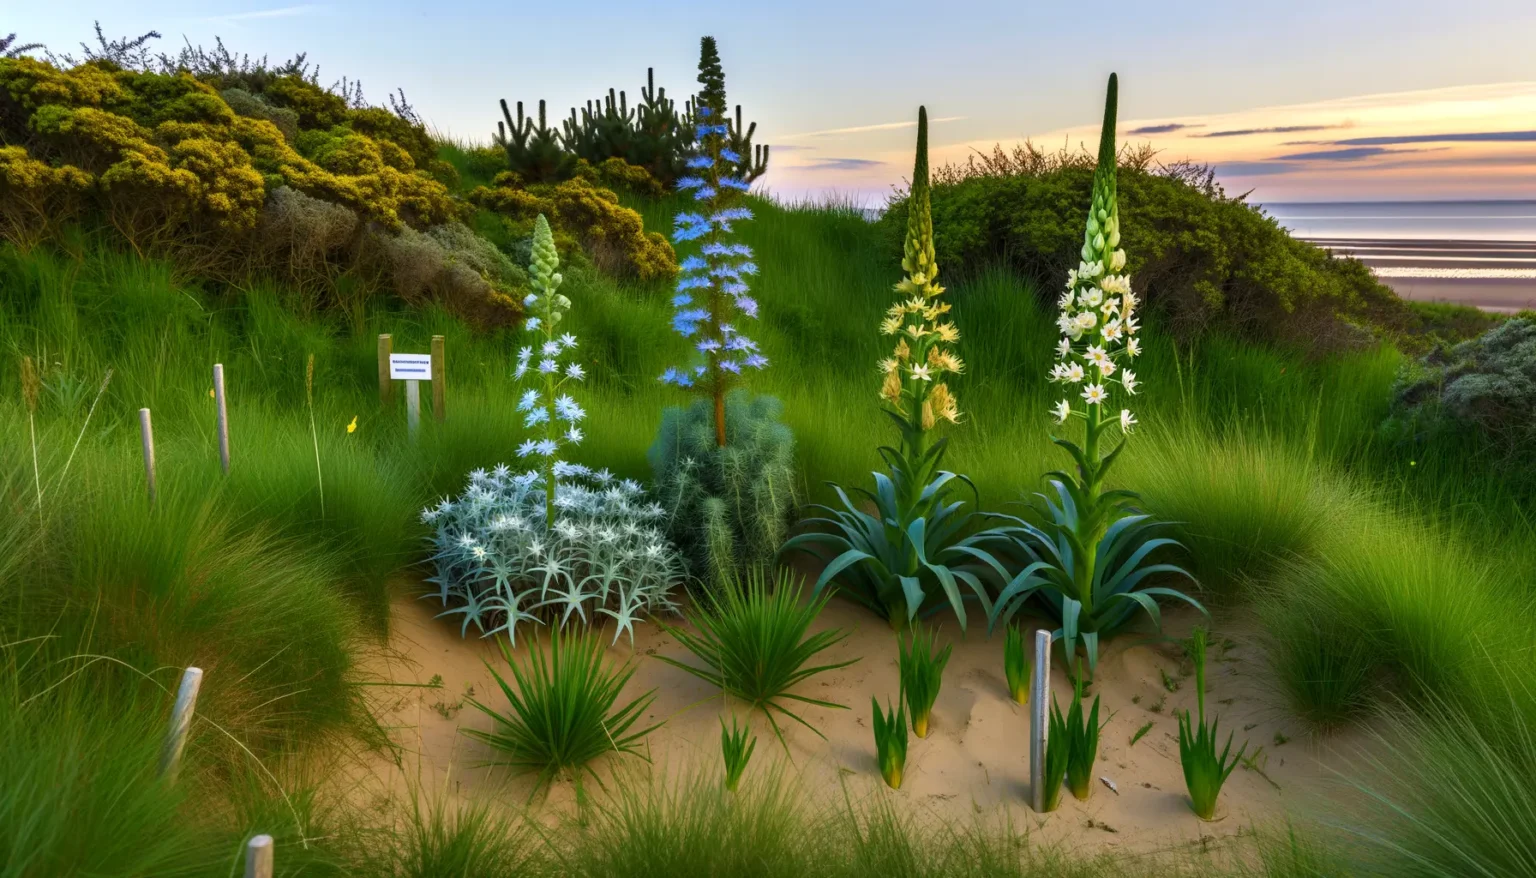 Eine malerische Küsten-Dünenlandschaft bei Sonnenuntergang mit einer Vielfalt an Pflanzen und Wildblumen. Im Vordergrund sind verschiedene Grüntöne von Gräsern und Blütenpflanzen zu erkennen, die auf sandigem Boden wachsen, wobei einige Blumen auffallend weiße und blaue Blüten zeigen. Im Hintergrund ist der ruhige Himmel mit warmen Tönen vom Sonnenuntergang und ein friedlicher Ozean zu sehen, der am Horizont das Bild abrundet.